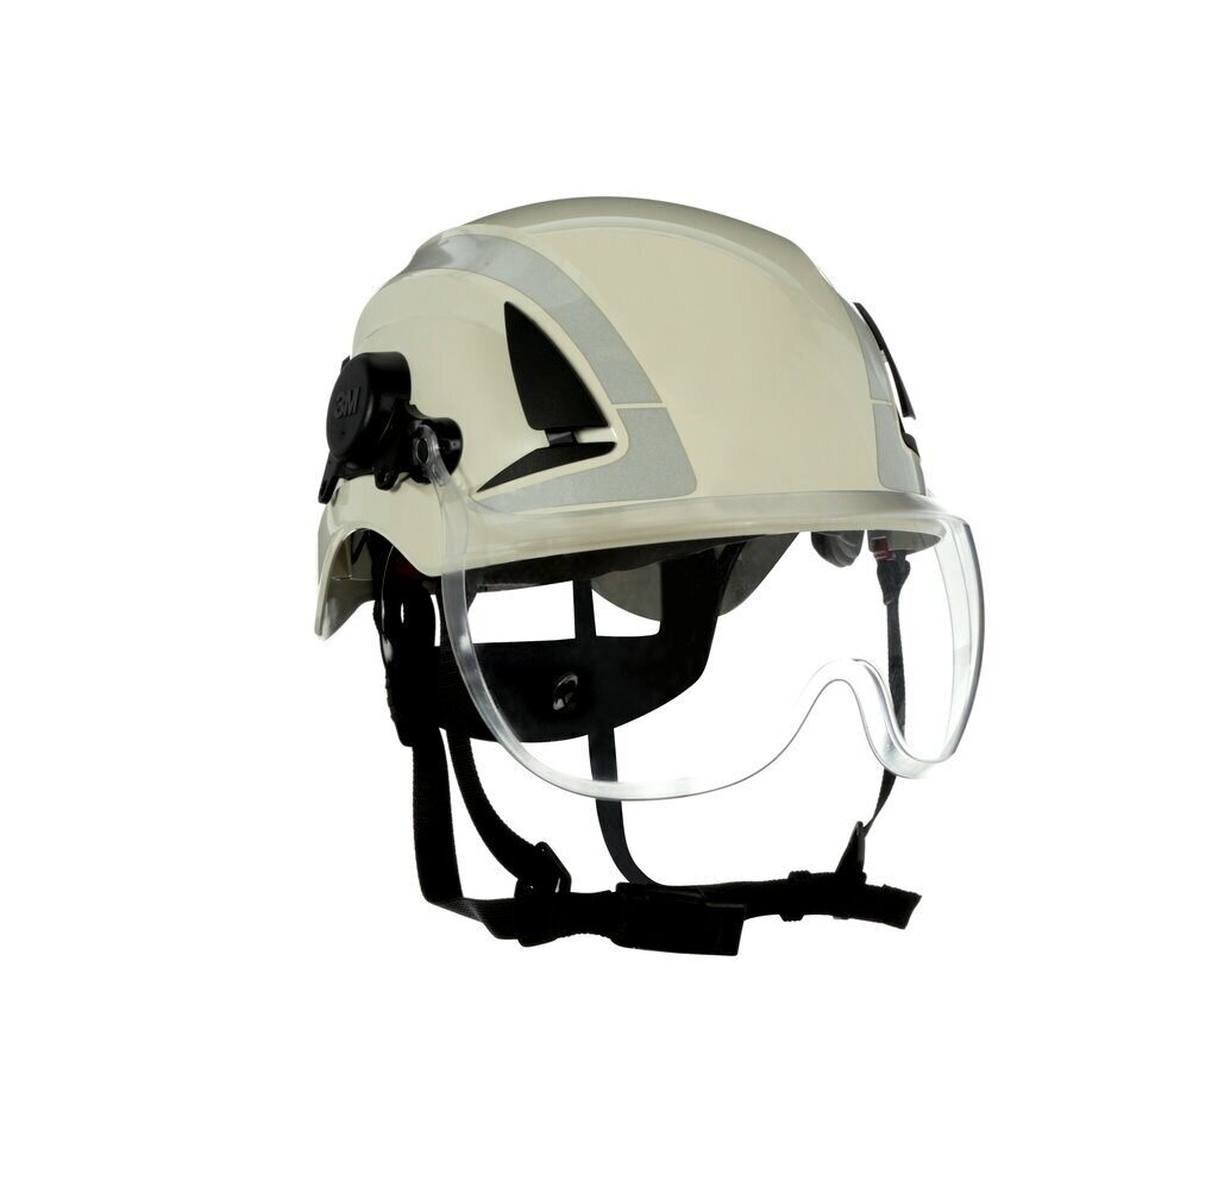 Visière courte 3M X5-SV01-CE pour les casques de protection X5000 et X5500, transparente, traitement antibuée et anti-rayures, polycarbonate